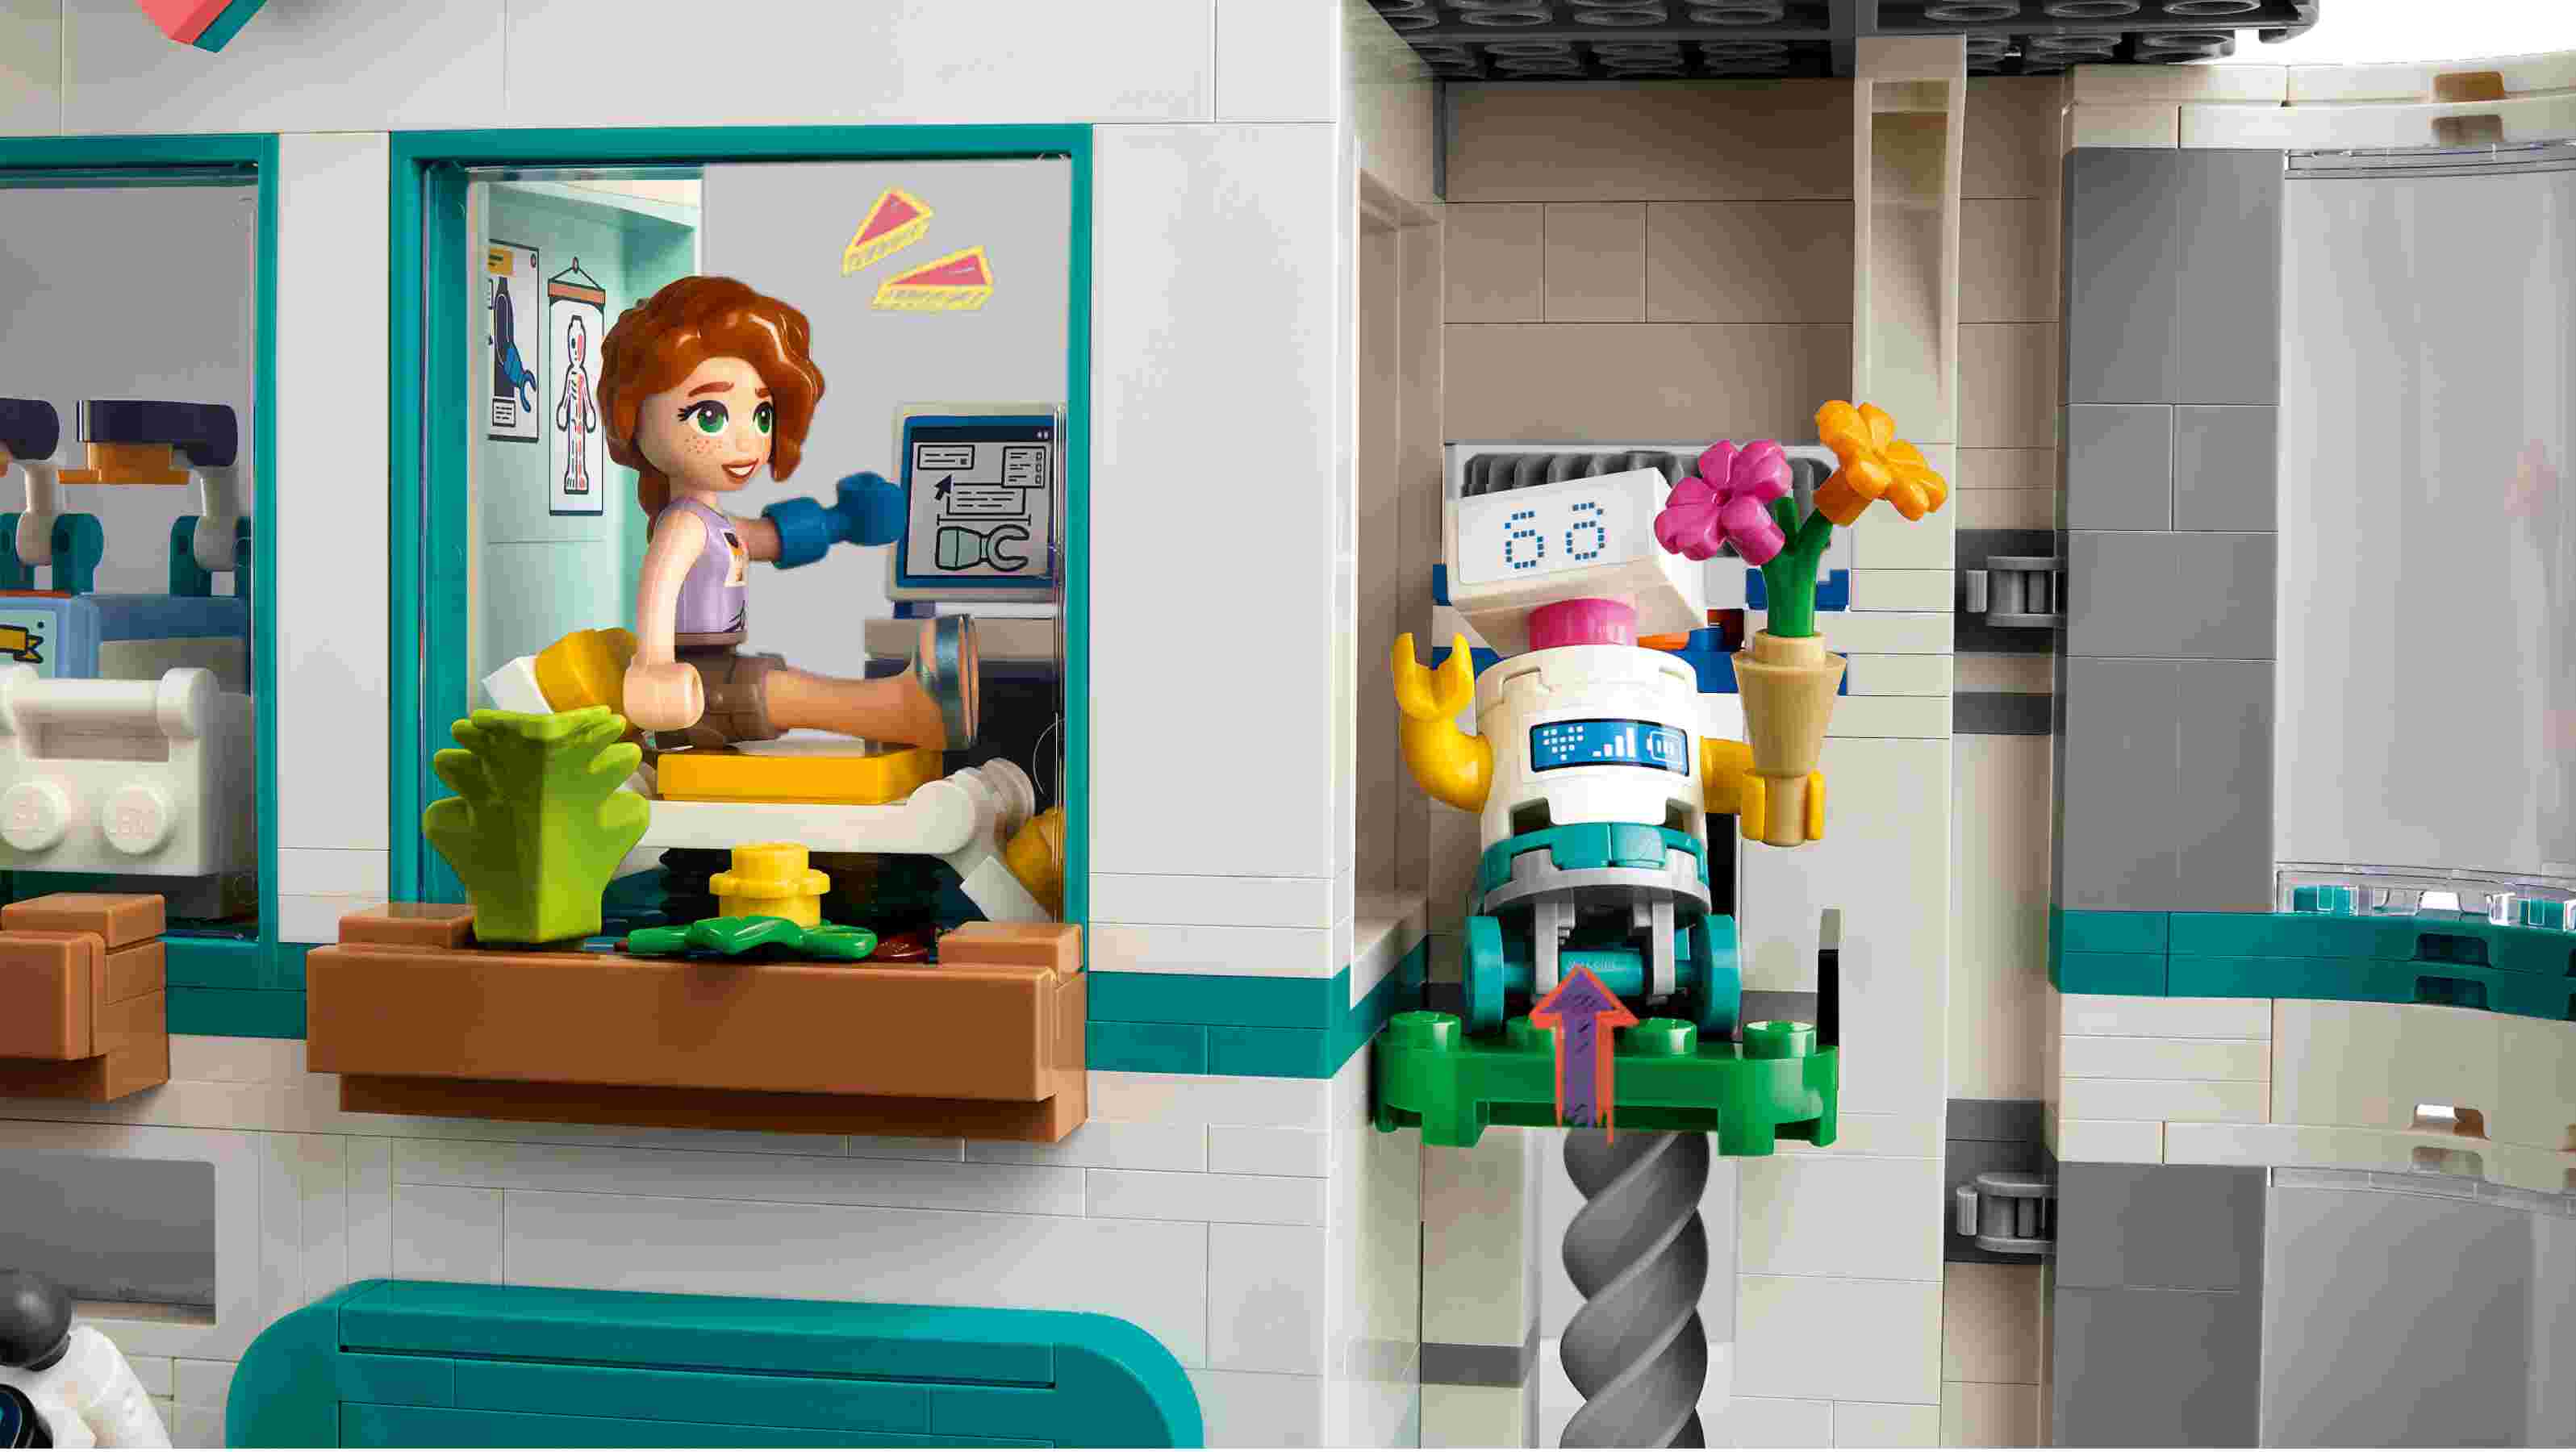 LEGO 42621 Friends Heartlake City Krankenhaus, 5 Spielfiguren, 2 Babys, Hund